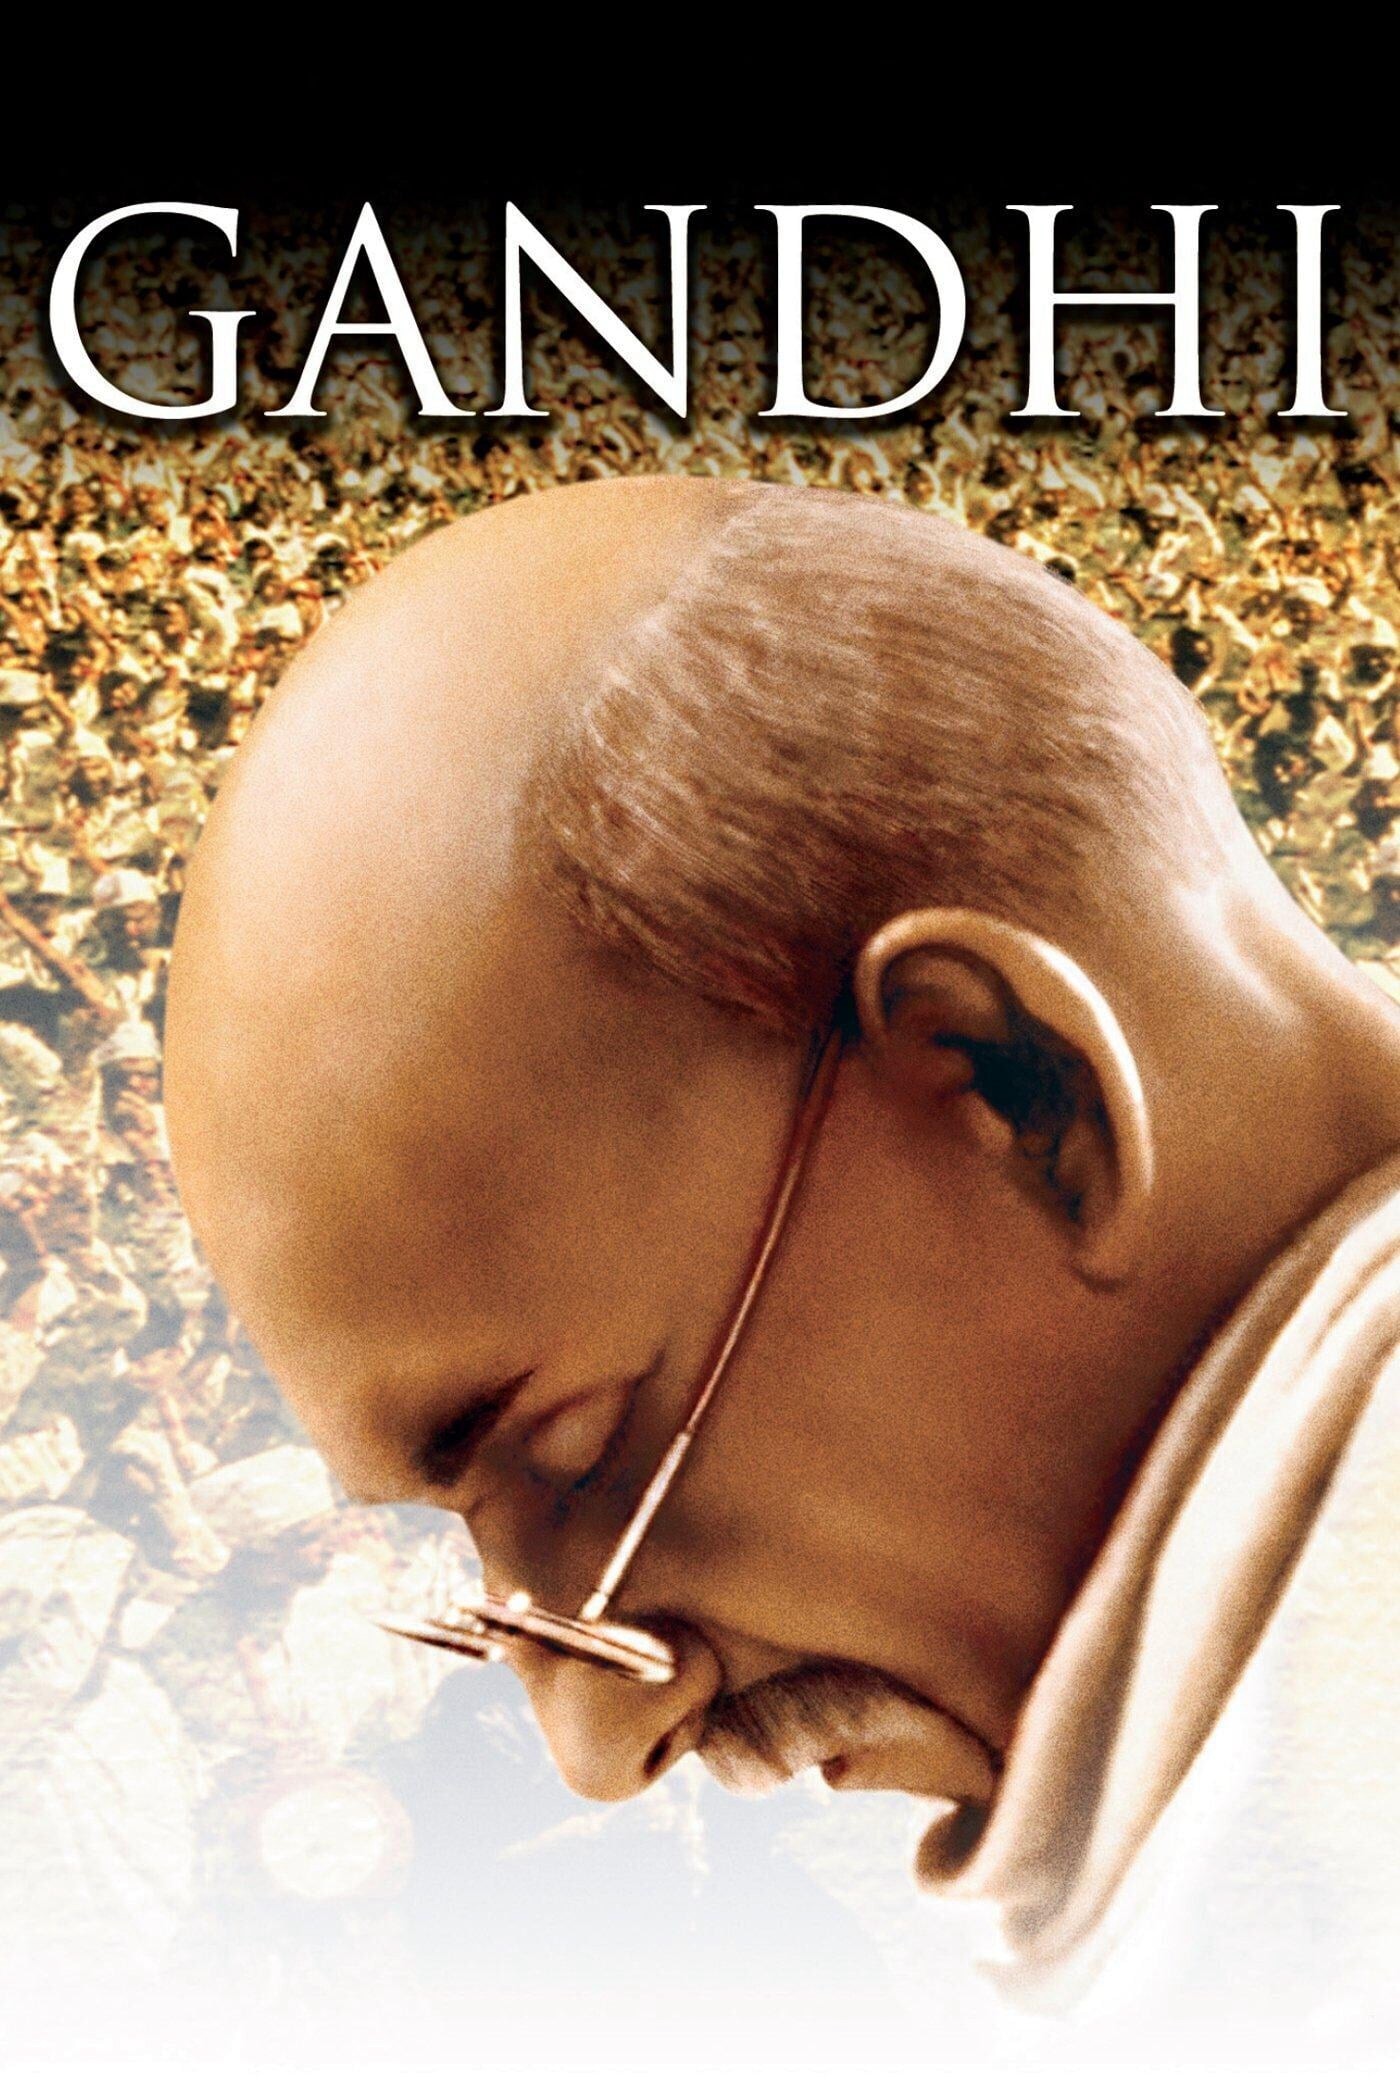 Cuộc Đời Gandhi - Cuộc Đời Gandhi (1982)